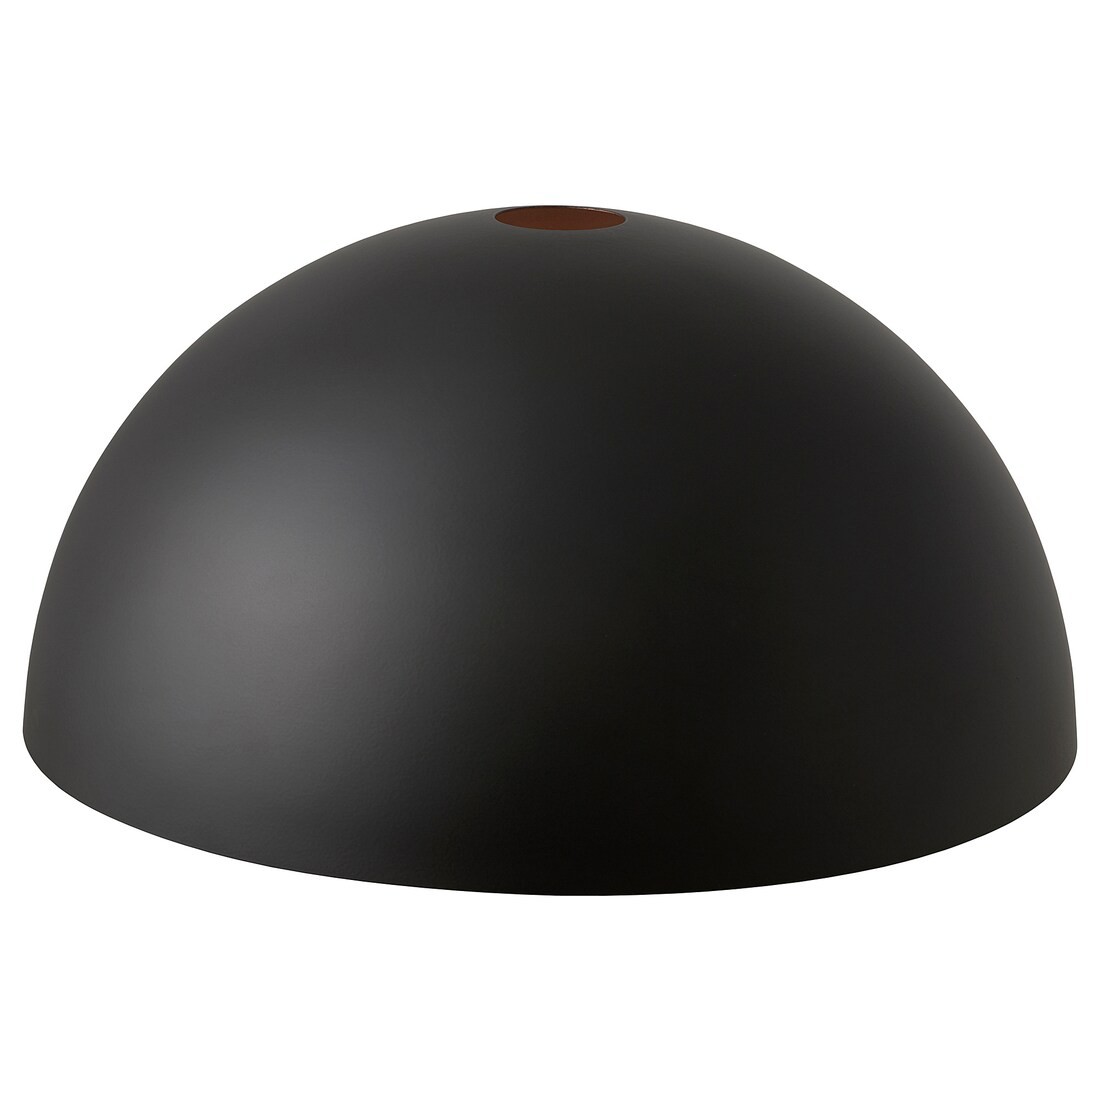 IKEA DYVIKA Абажур для подвесн светильника, цвет черный/медный, 35 см 00548009 005.480.09